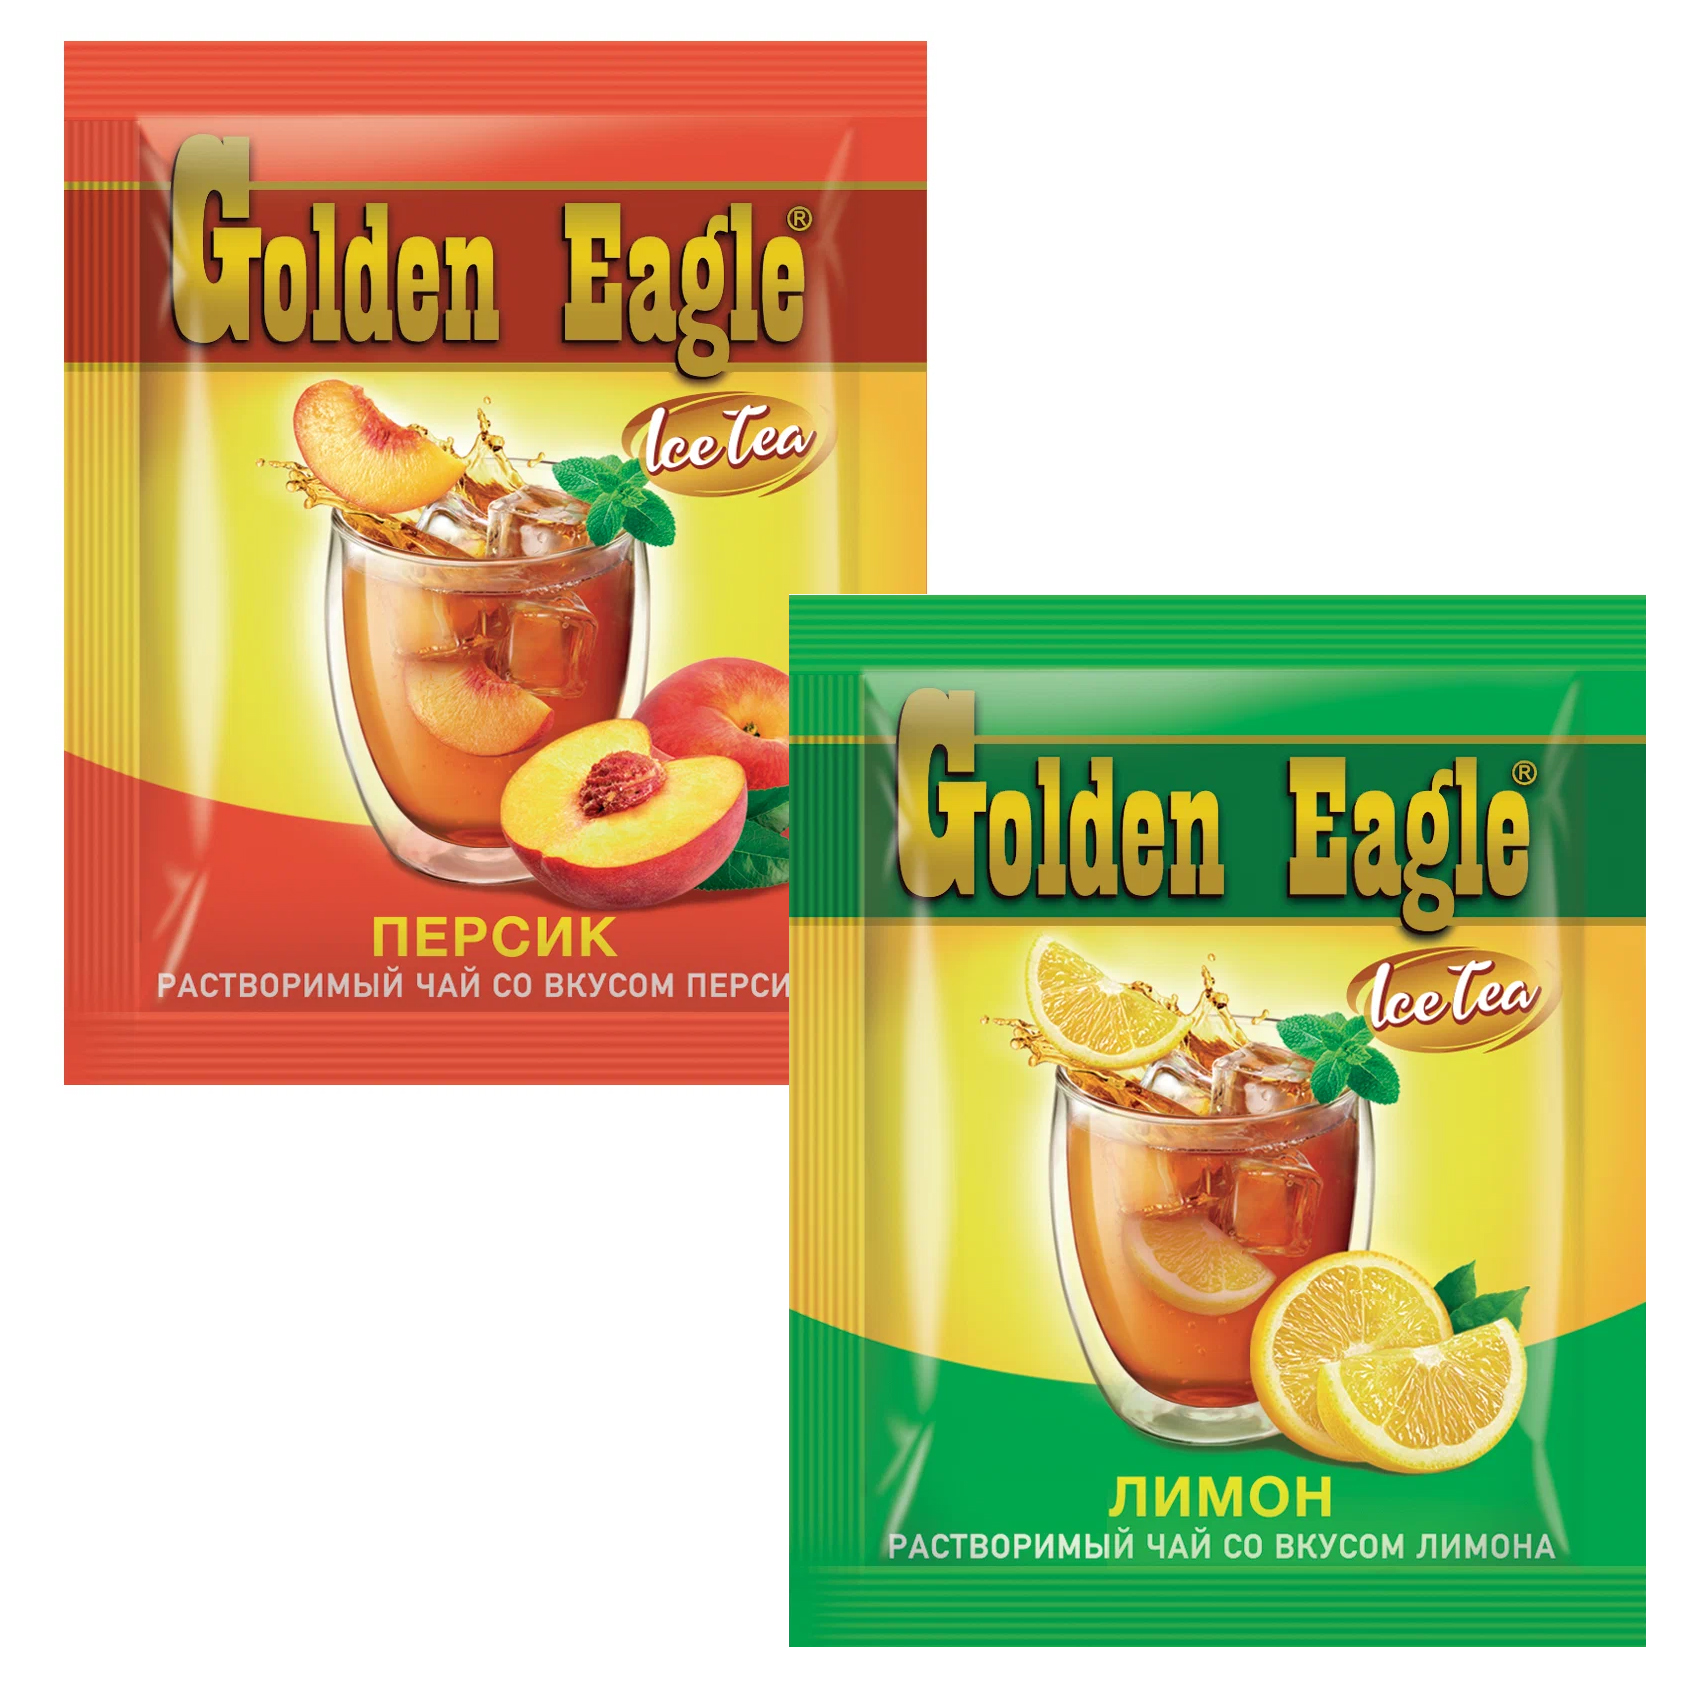 Растворимый чай "Golden Eagle" в ассортименте 0,4 кг